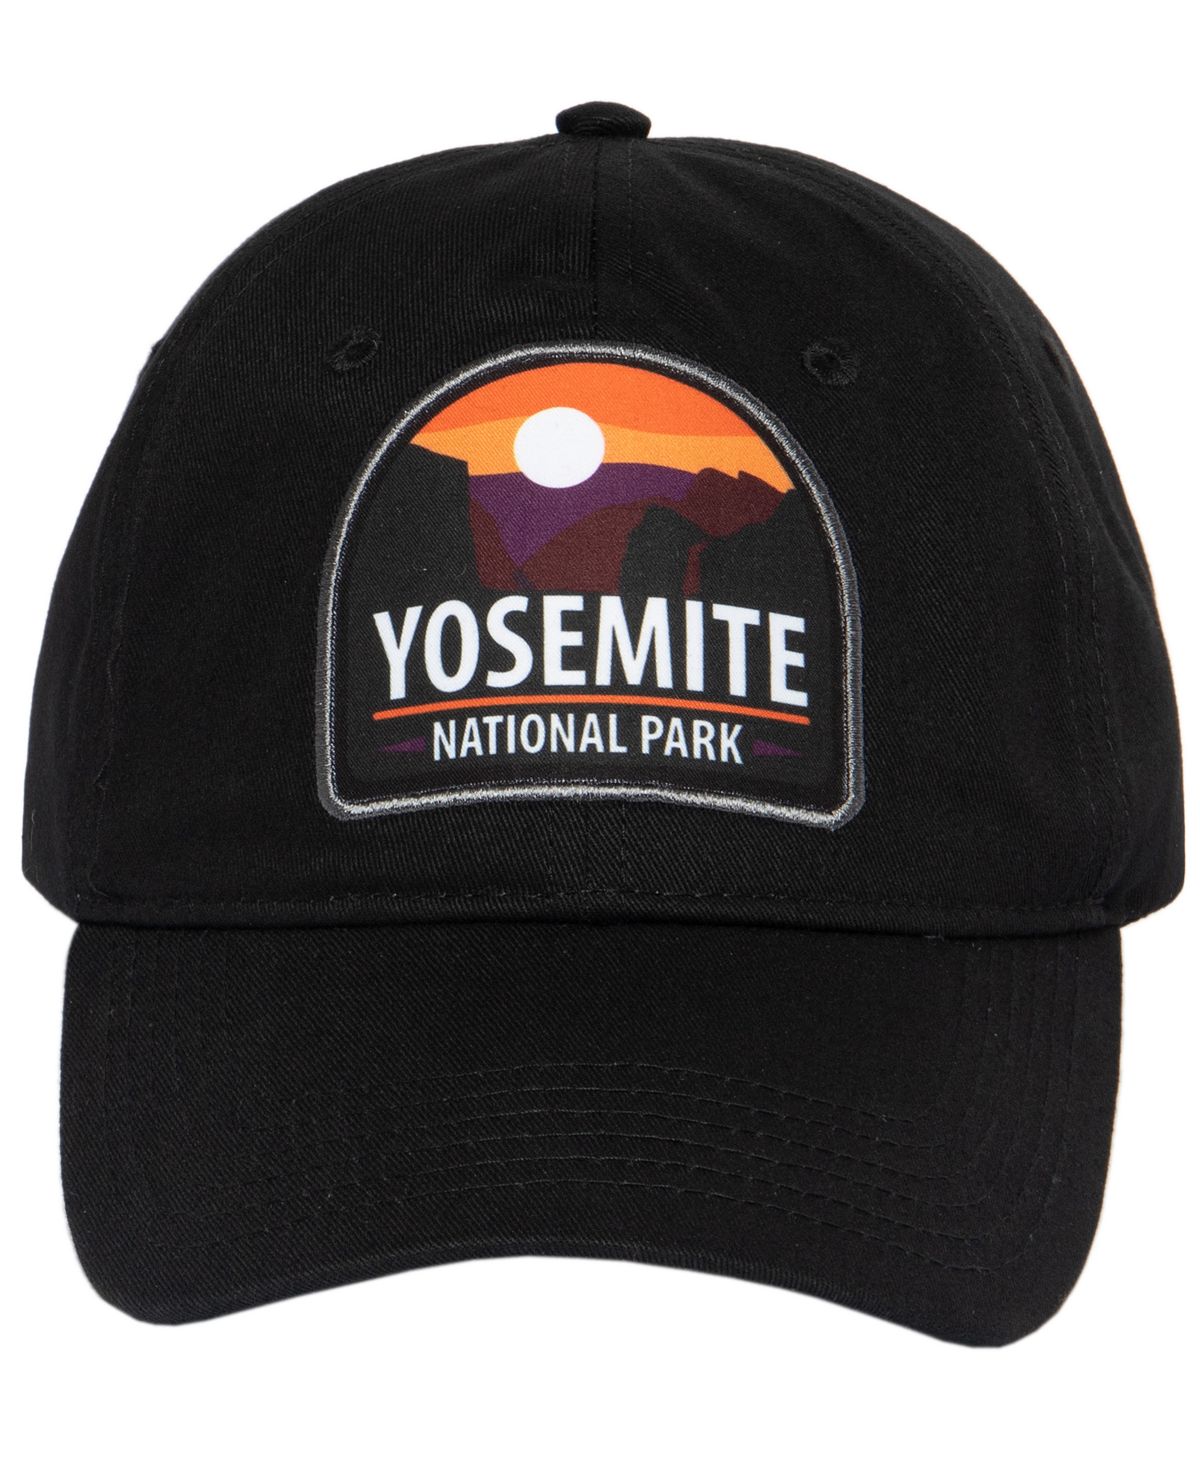 мужская футболка с коротким рукавом parks project yosemite в стиле 90 х годов Мужская низкопрофильная регулируемая бейсбольная кепка National Parks Foundation